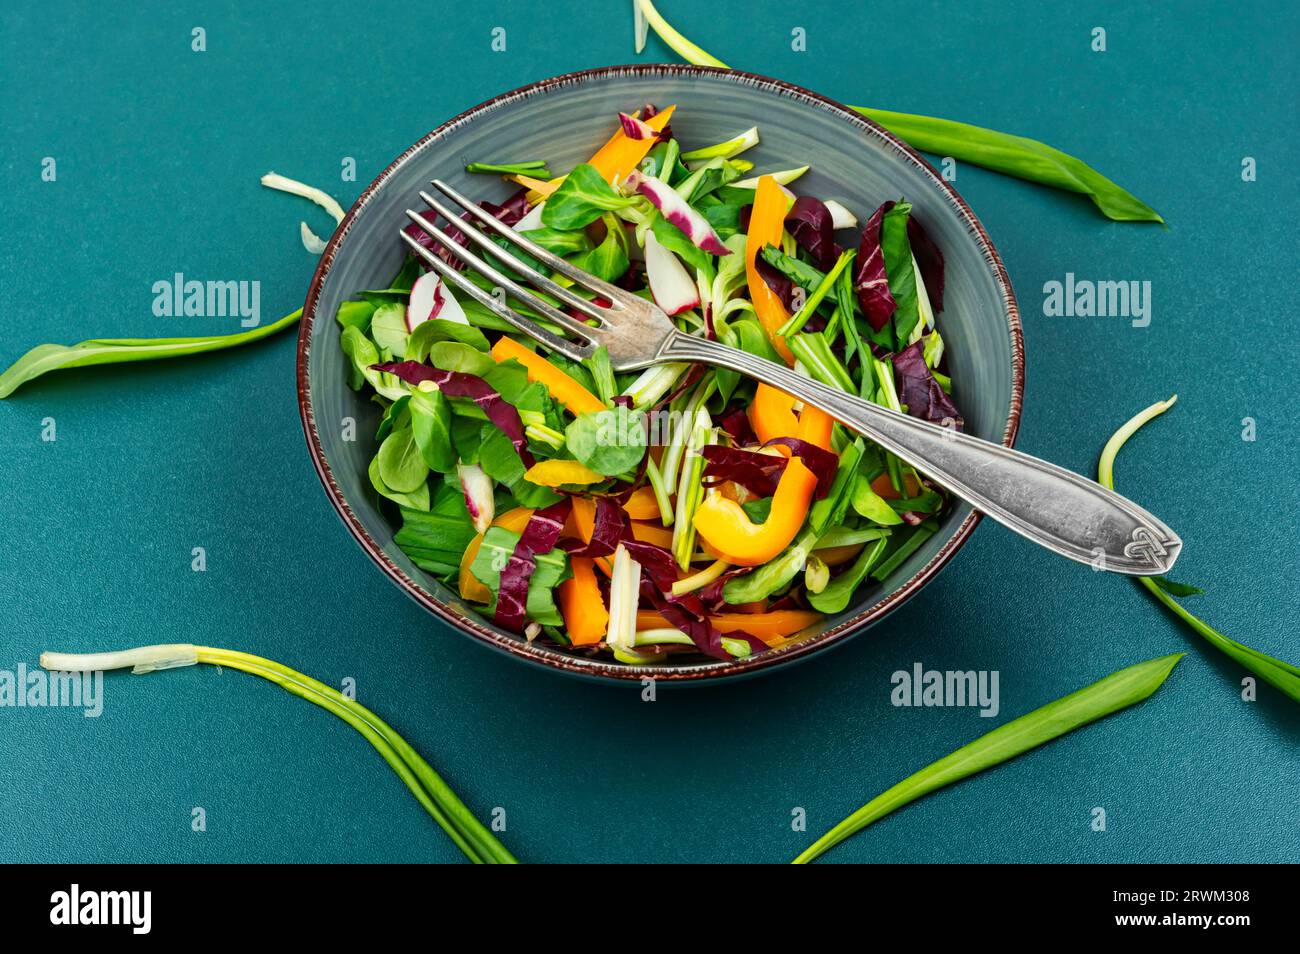 Salade de printemps fraîche avec légumes, rarishand ramson sur l'assiette. Concept alimentaire végétalien sain. Banque D'Images